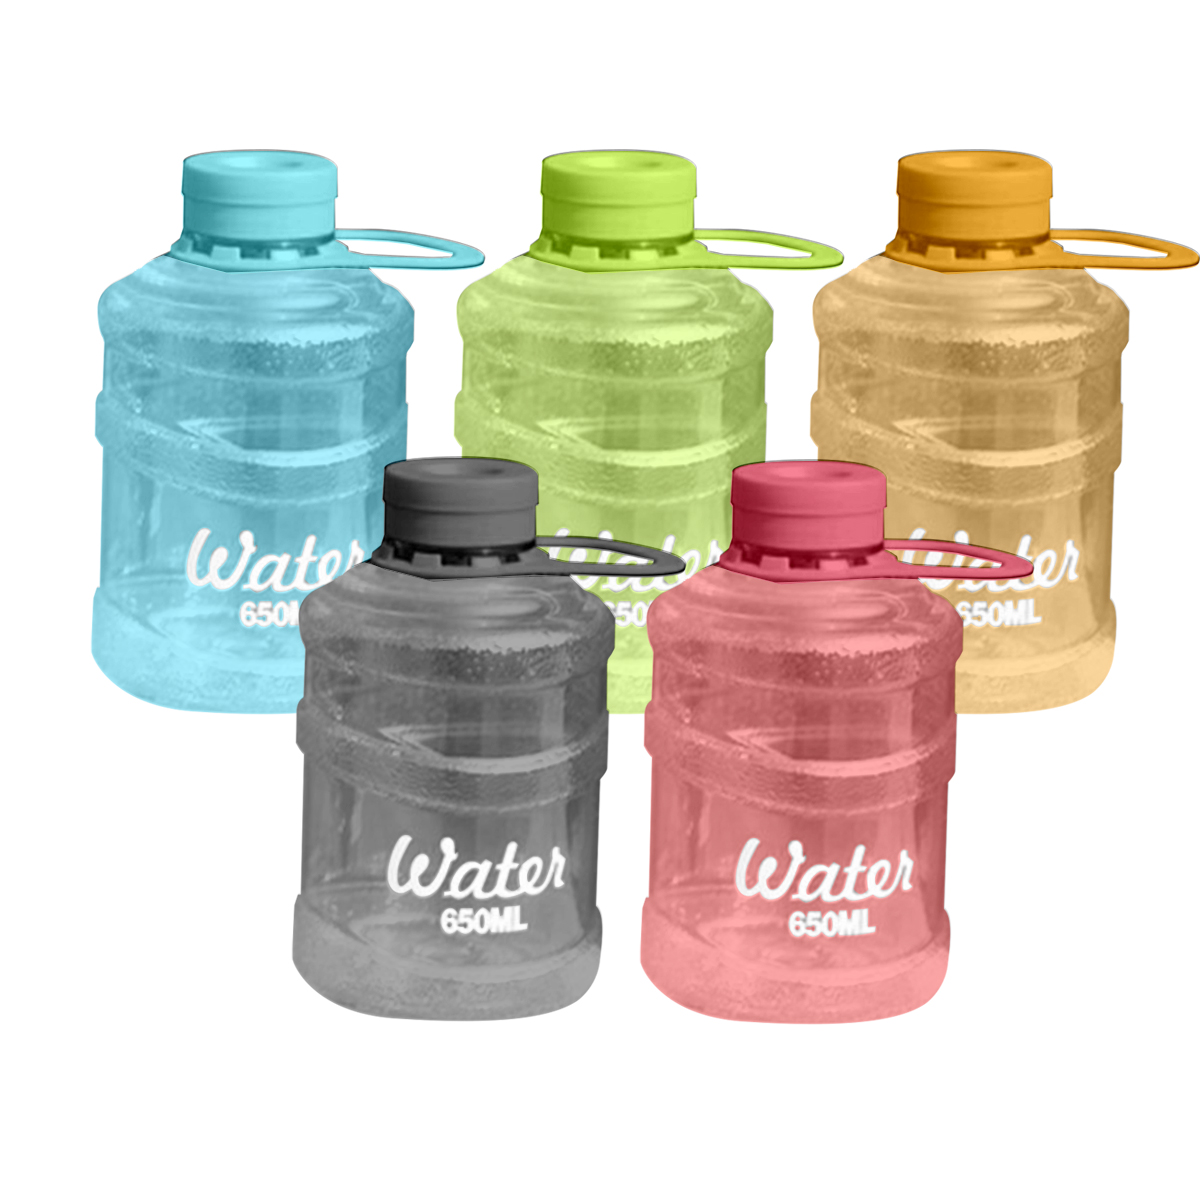 Mini Bucket Plastic Water Bottle (650ml)